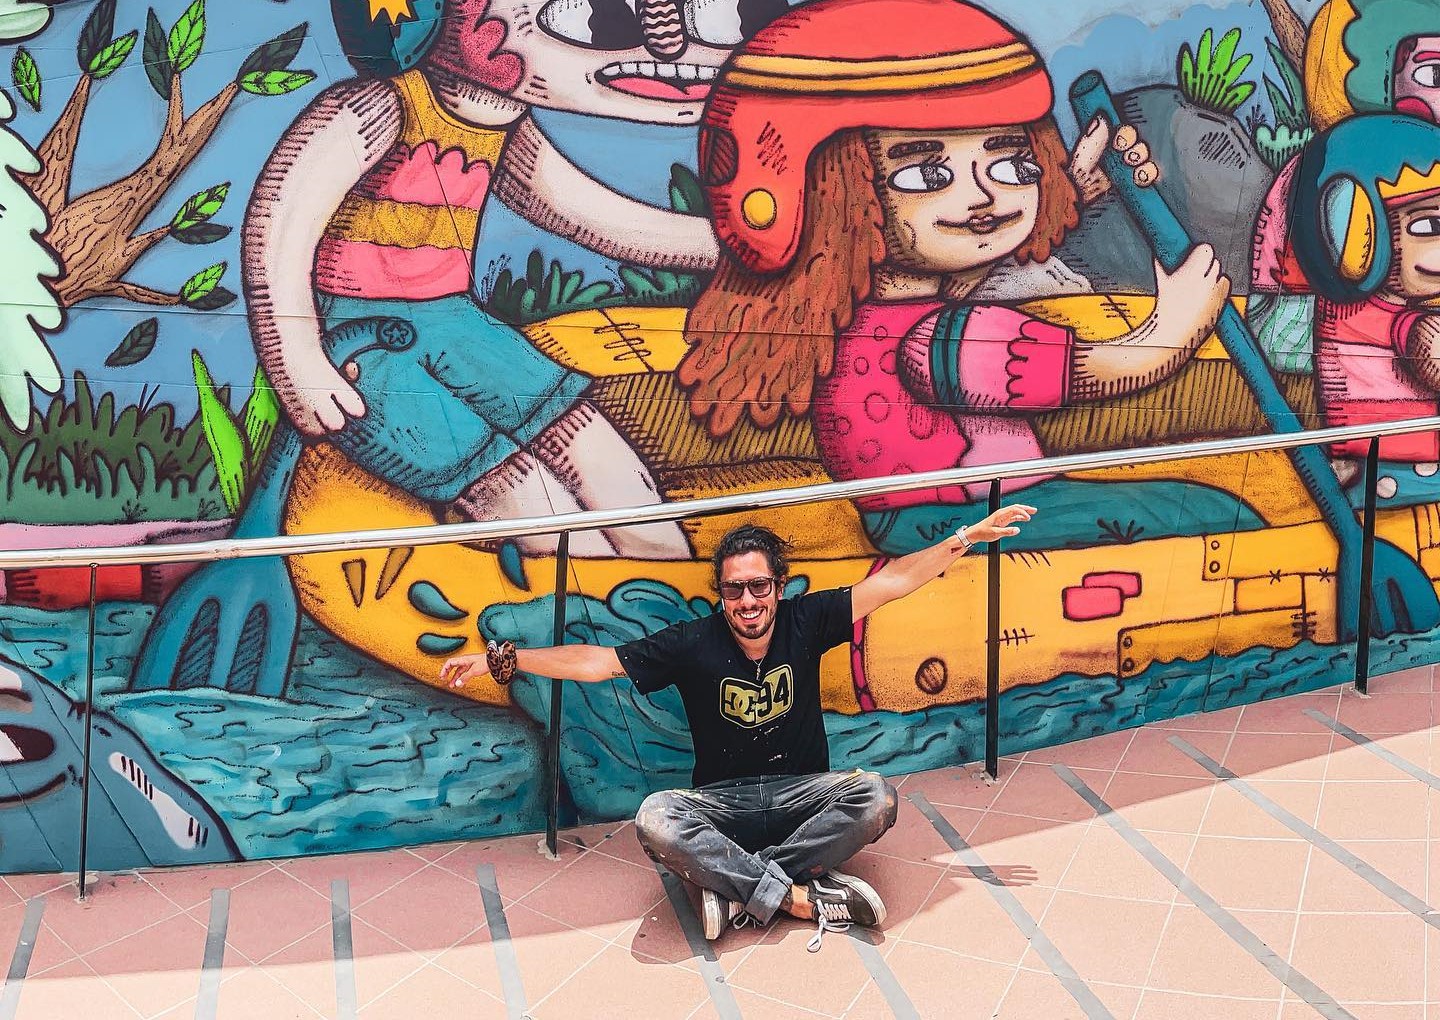 JC Cake vivió la iniciativa los graffitis más dulces como un reto para su carrera. Foto: Instagram.